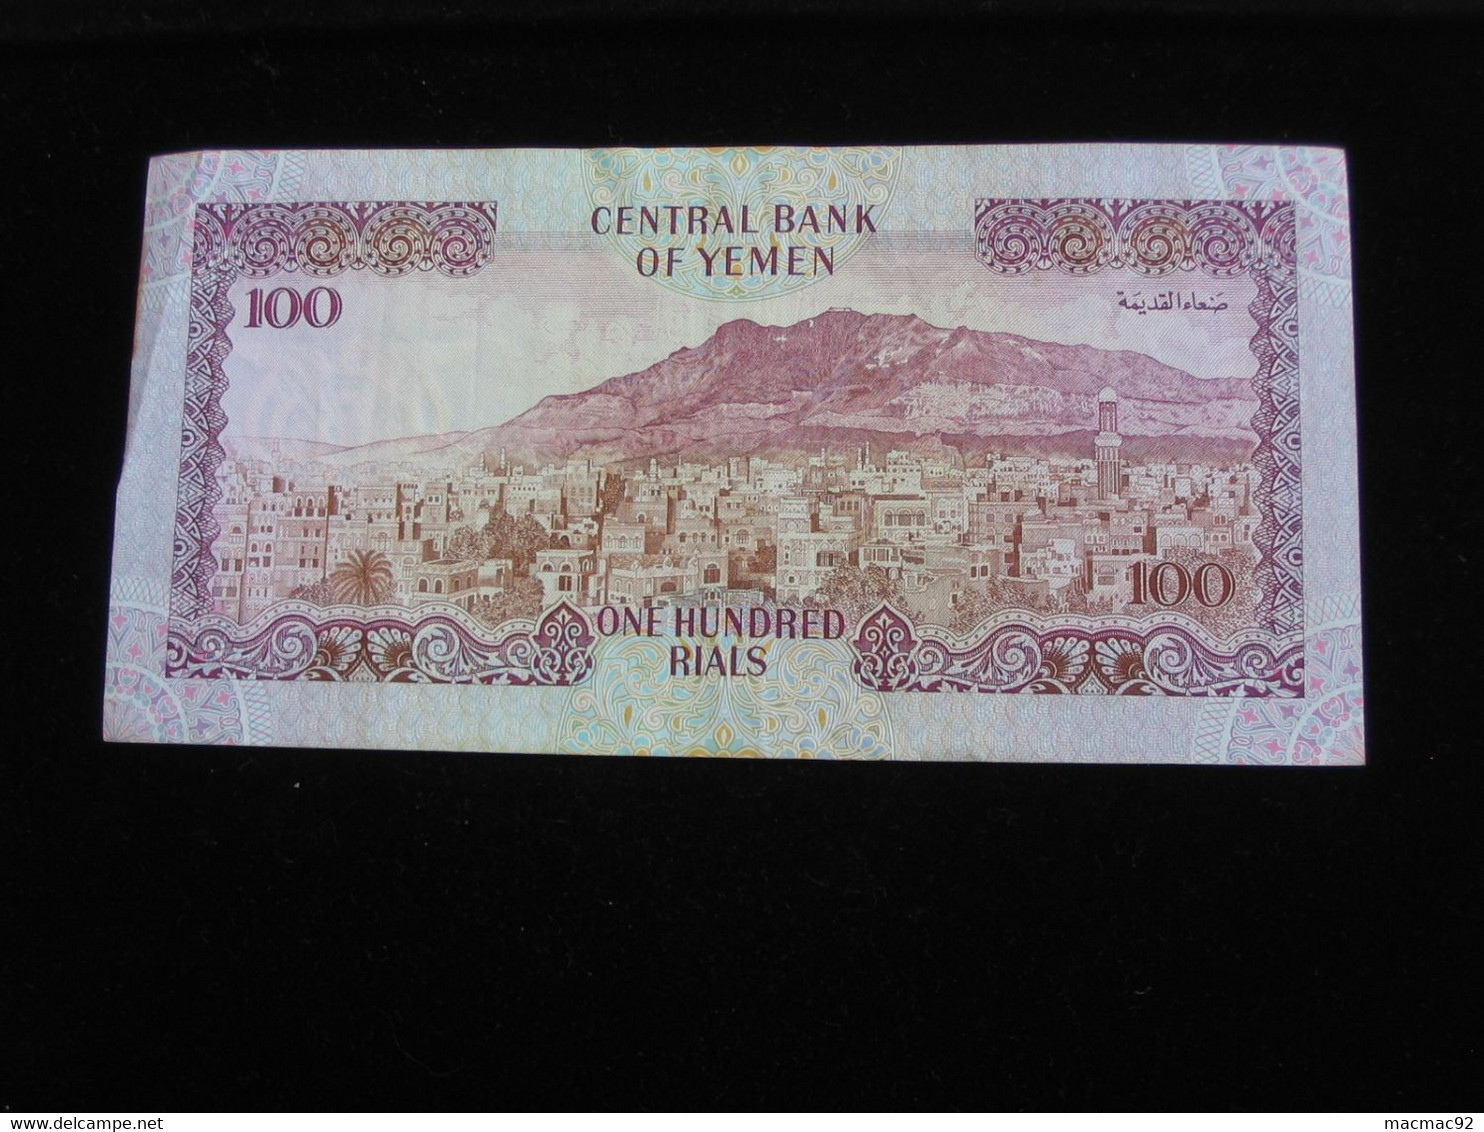 YEMEN  - 100 Five Hundred Rials 1997 - Central Bank Of Yemen   **** EN ACHAT IMMEDIAT ***** - Yemen